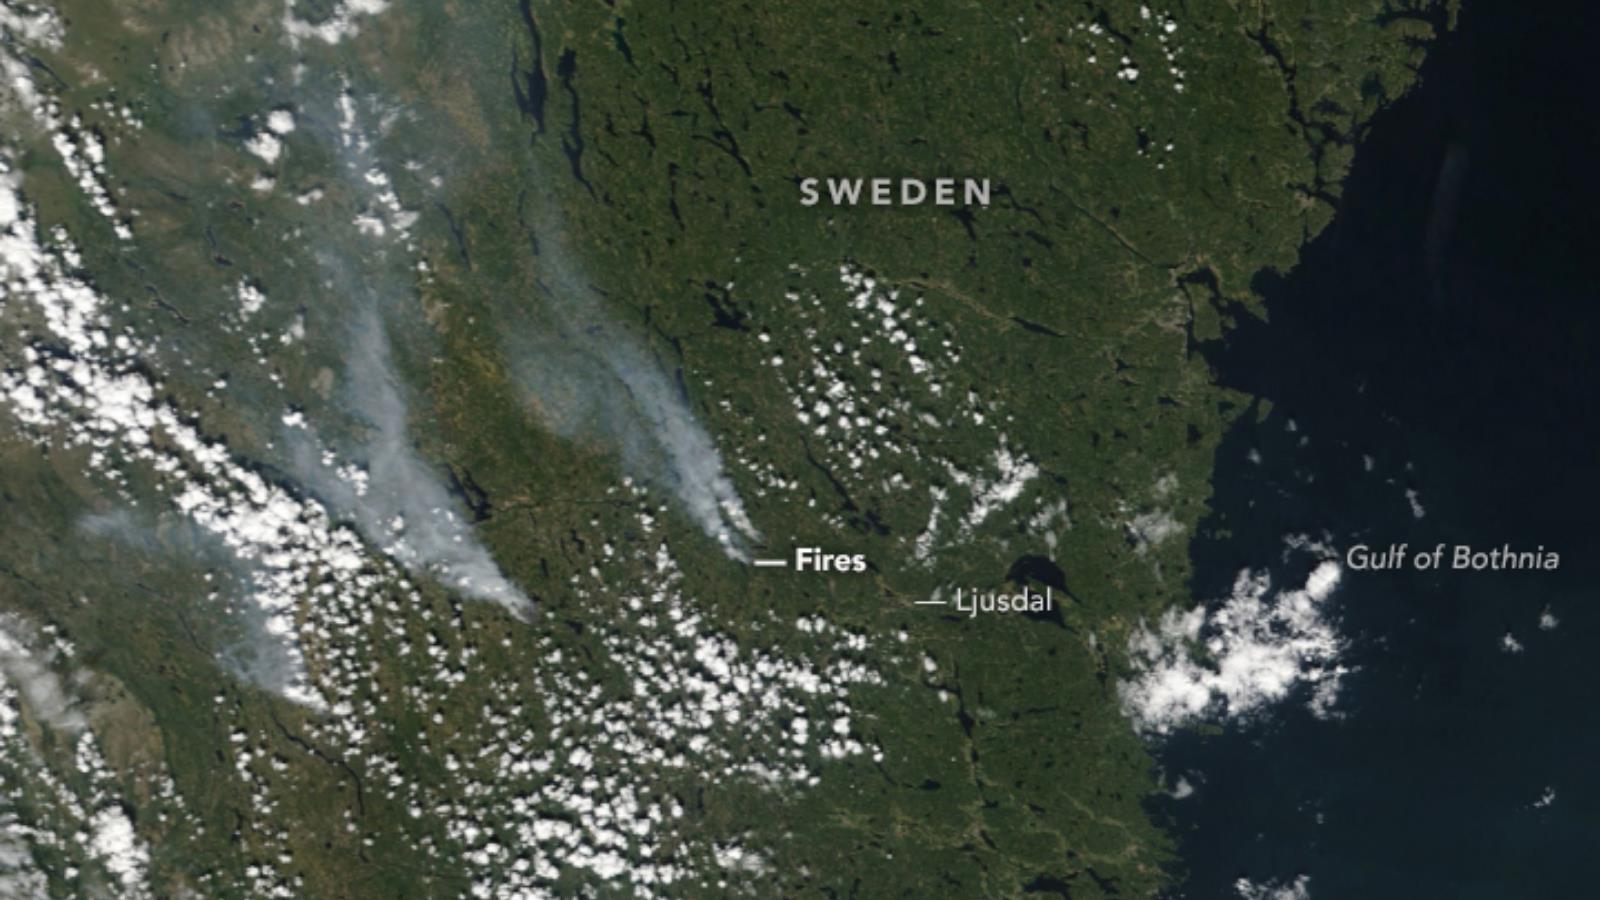 ‪تسببت الظروف الجافة والحارقة في اندلاع حرائق غابات تاريخية في جميع أنحاء السويد صيف 2018‬ (ناسا)